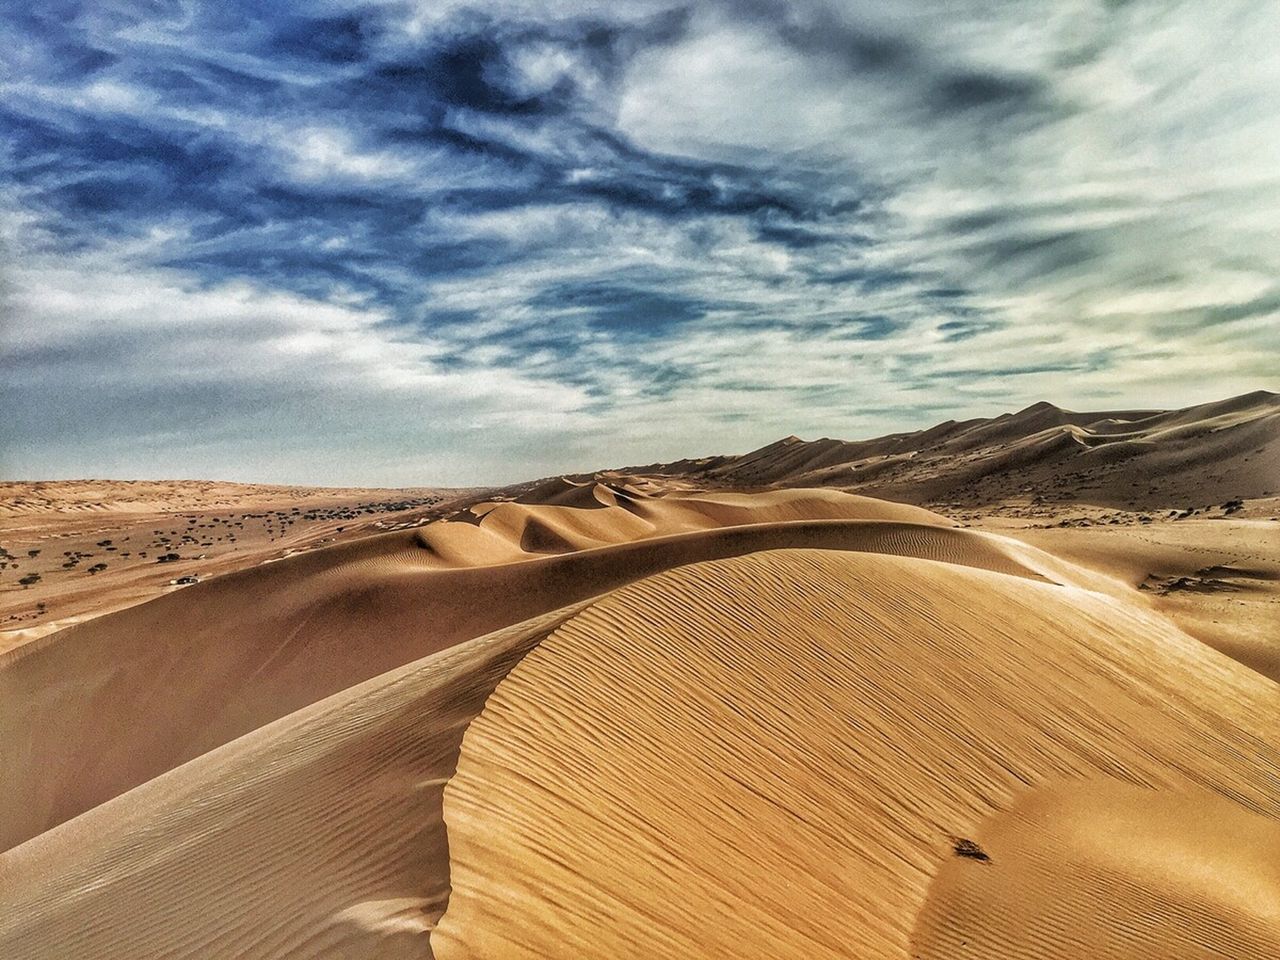 Сказочный оазис Вади Шаб с закатом в пустыне | Цена 600$, отзывы, описание экскурсии